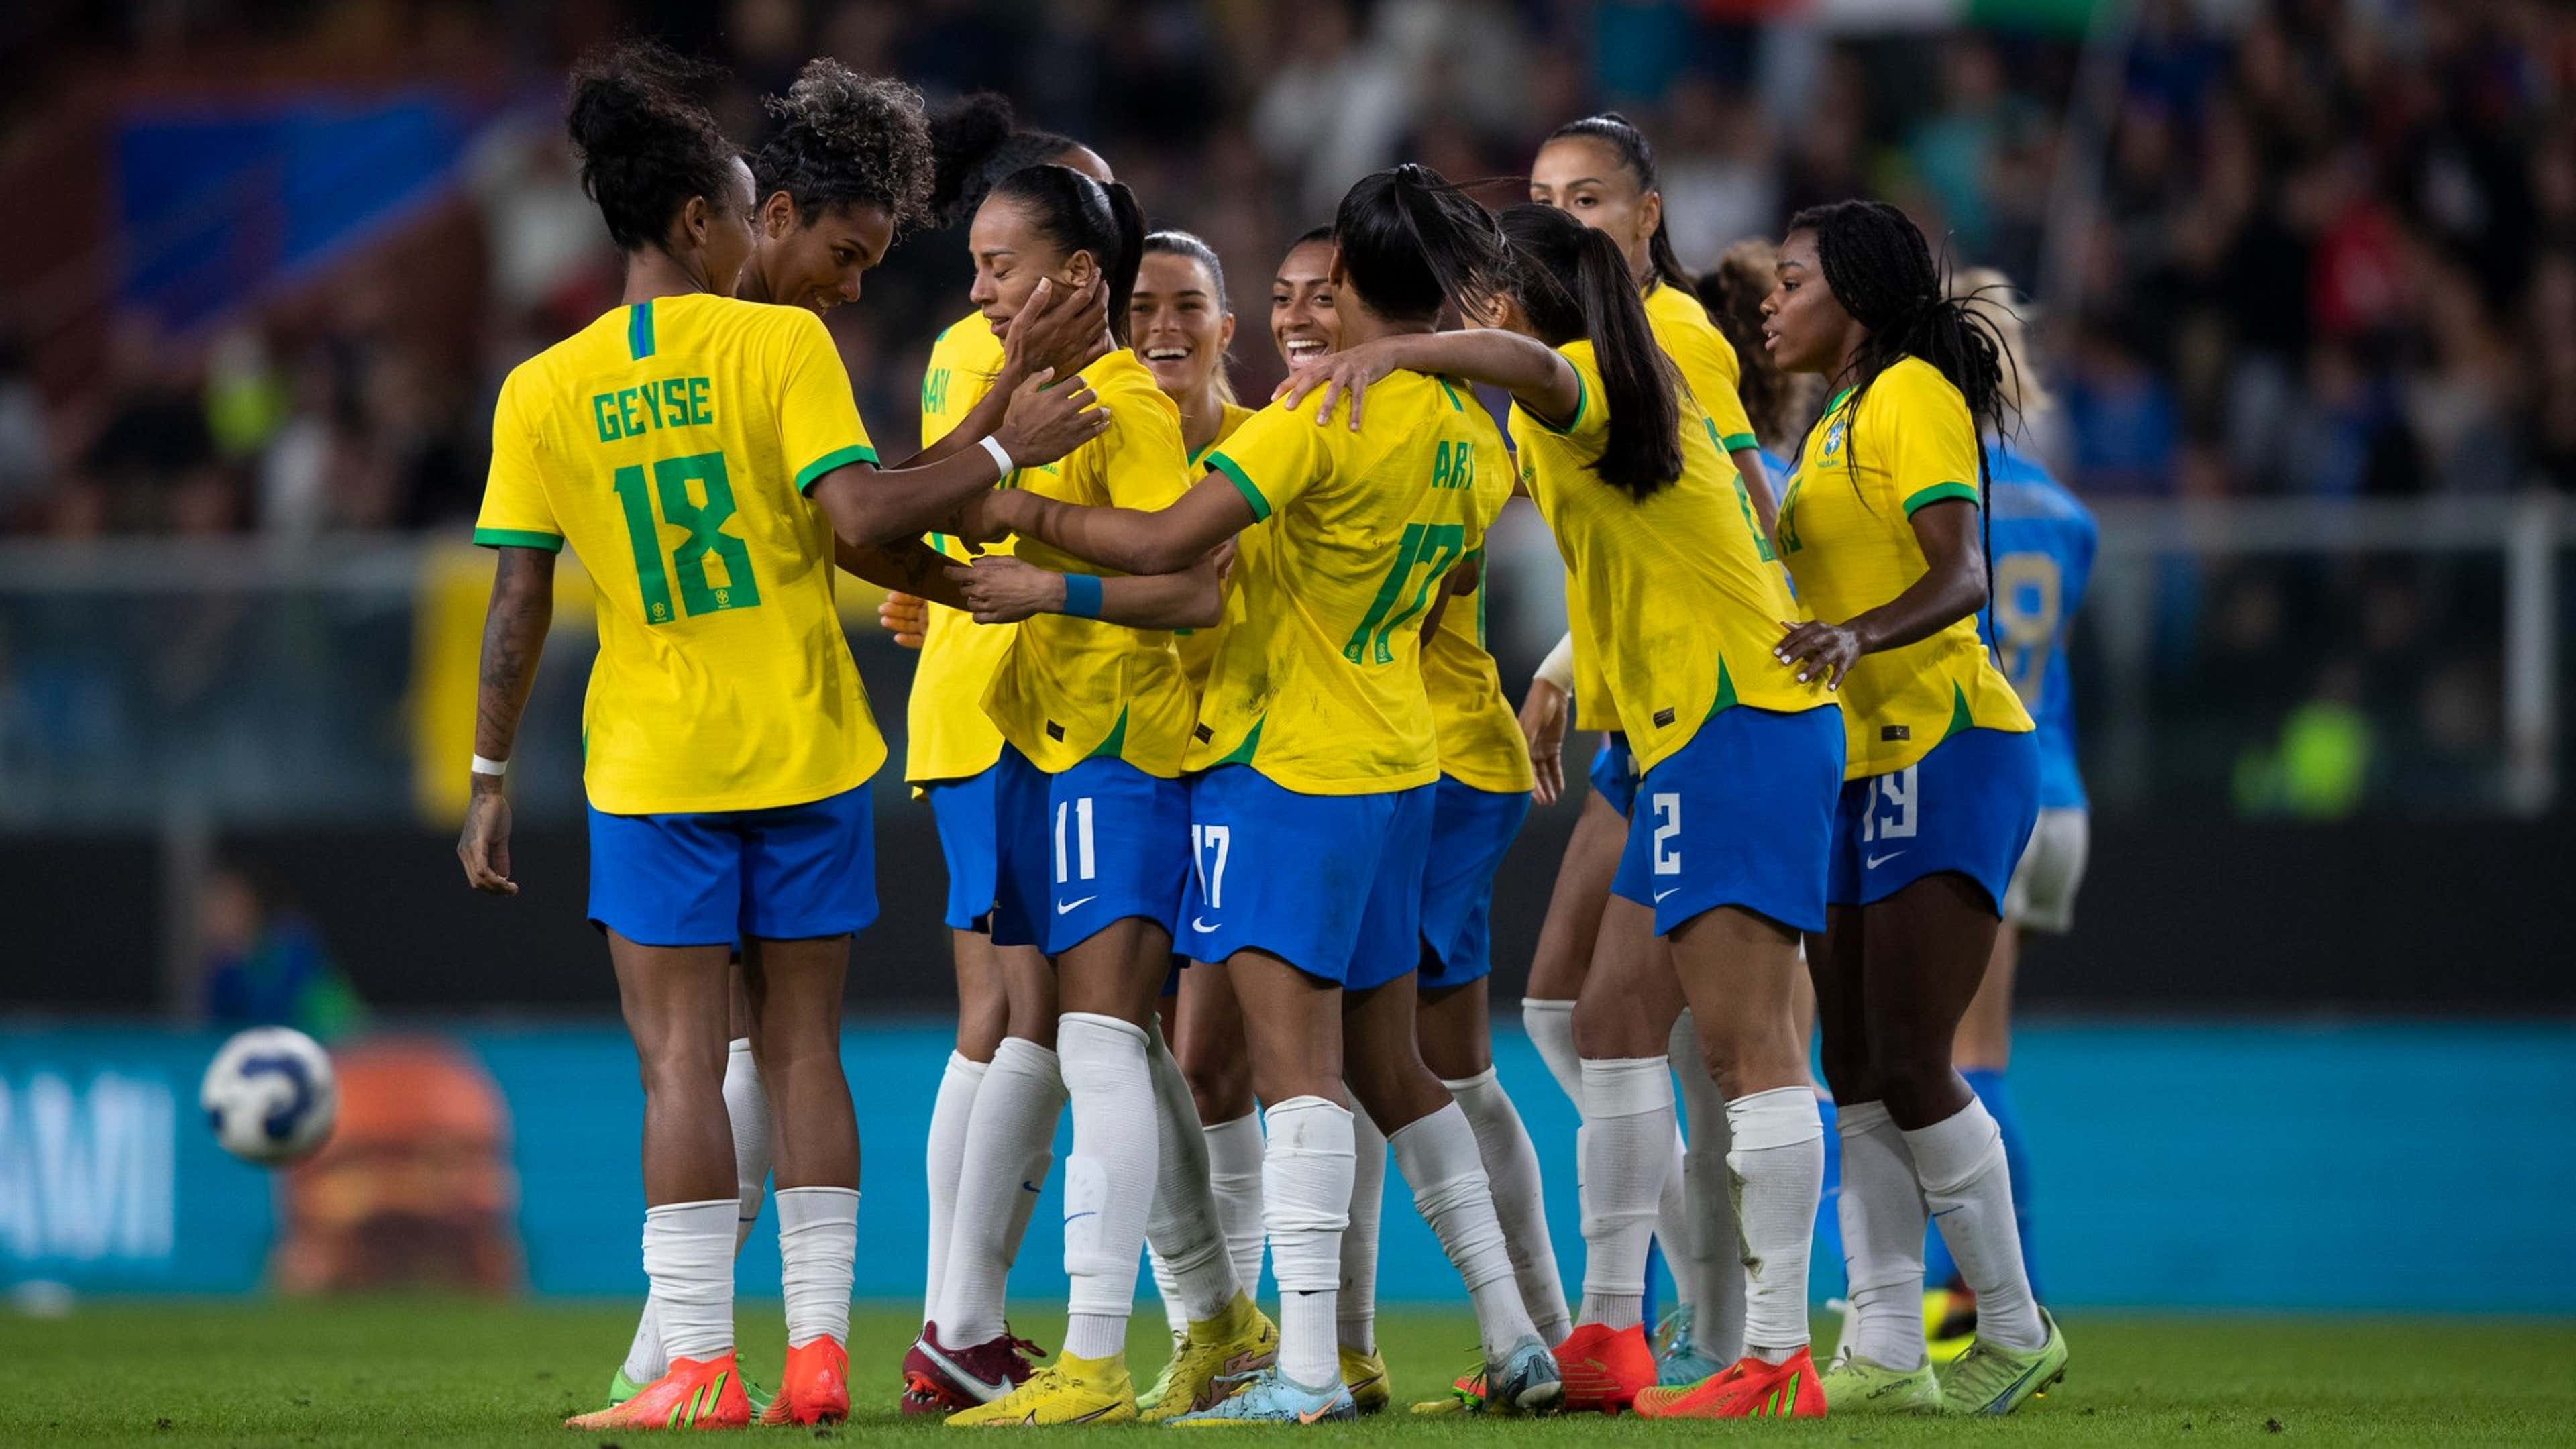 O que podemos esperar da seleção brasileira feminina em 2023?